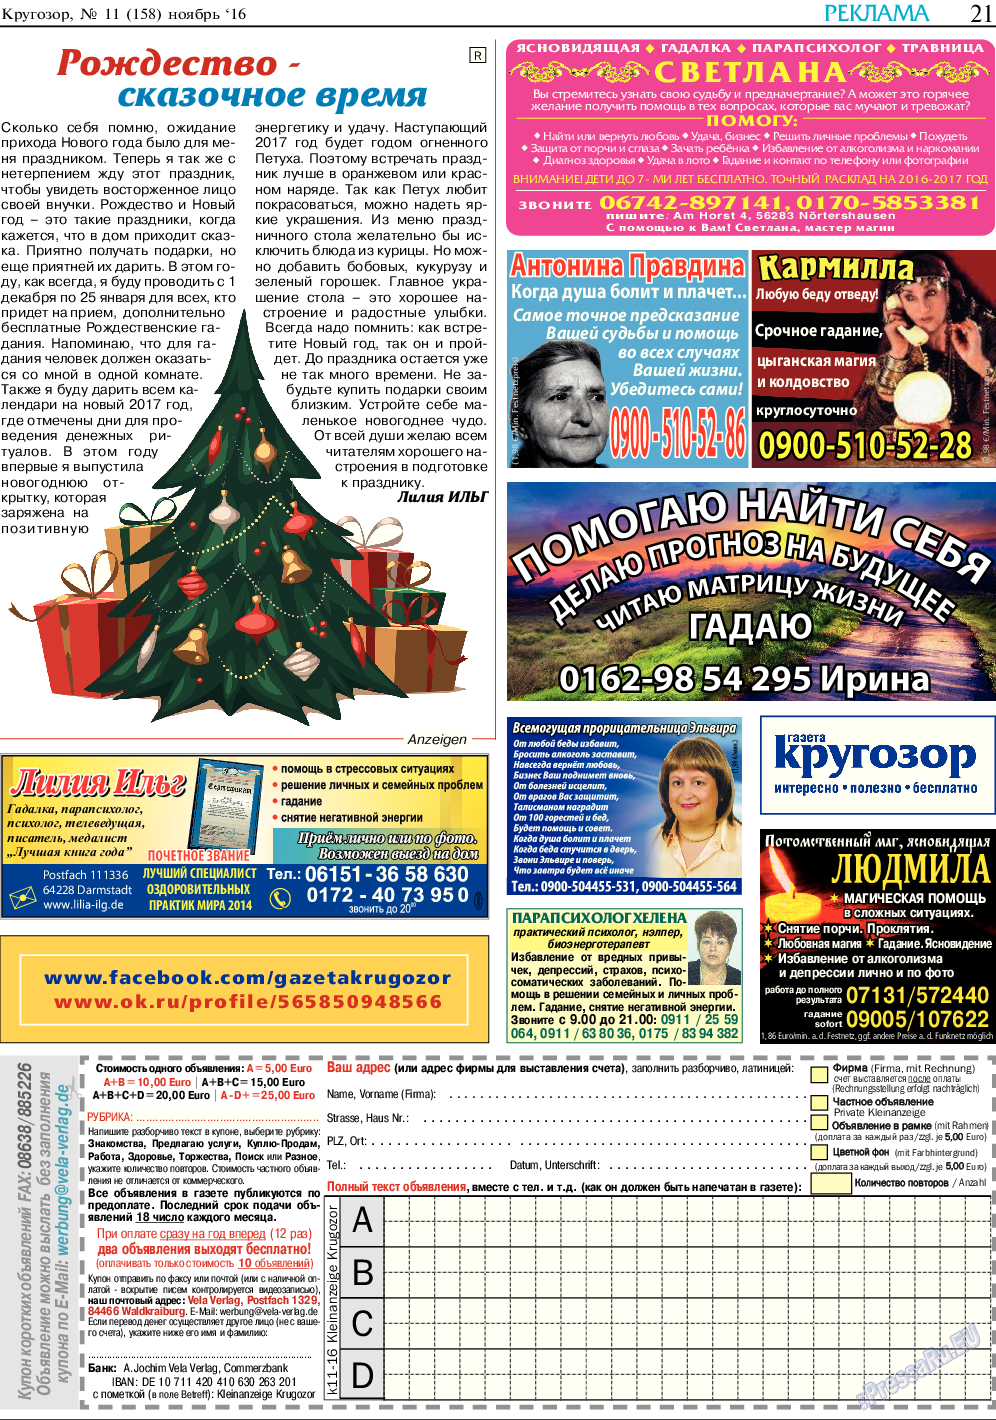 Кругозор, газета. 2016 №11 стр.21